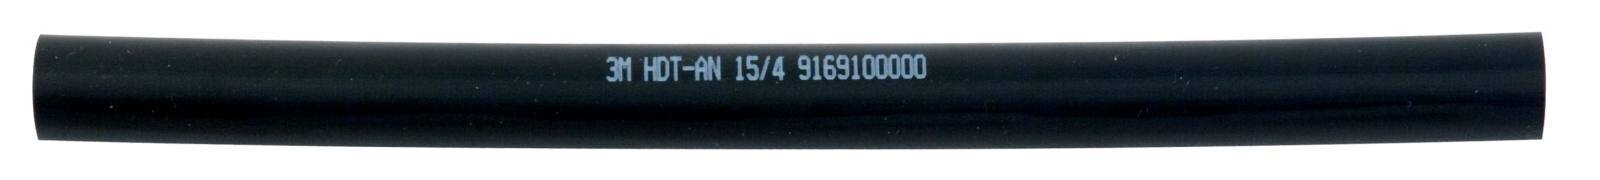  3M HDT-AN Paksuseinäinen lämpökutisteputki liimalla, musta, 15/4 mm, 1 m